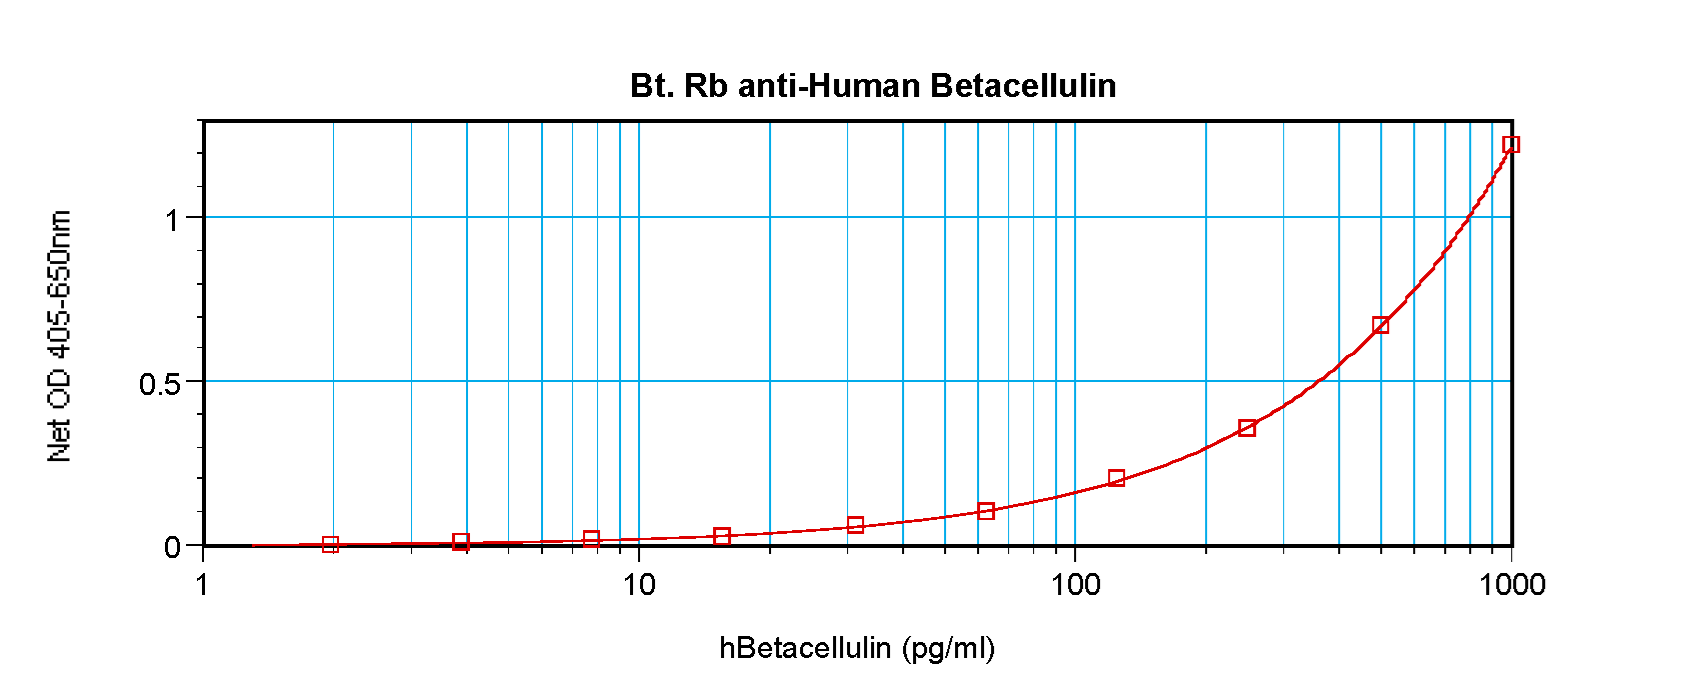 BTC / Betacellulin Antibody - Biotinylated Anti-Human Betacellulin Sandwich ELISA